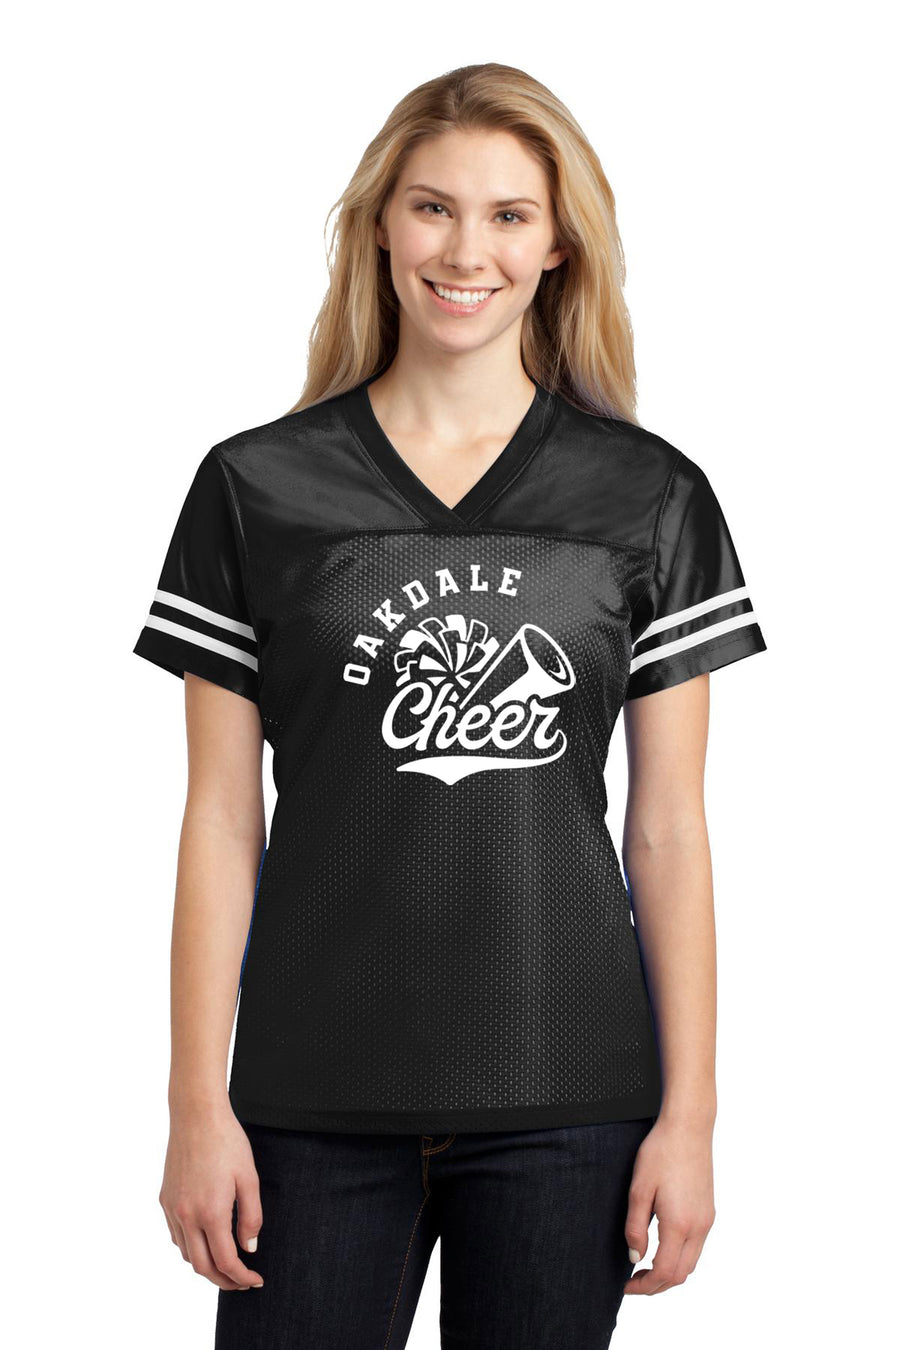 Oakdale Bears Cheer Jersey Full Length (LOUYAA)